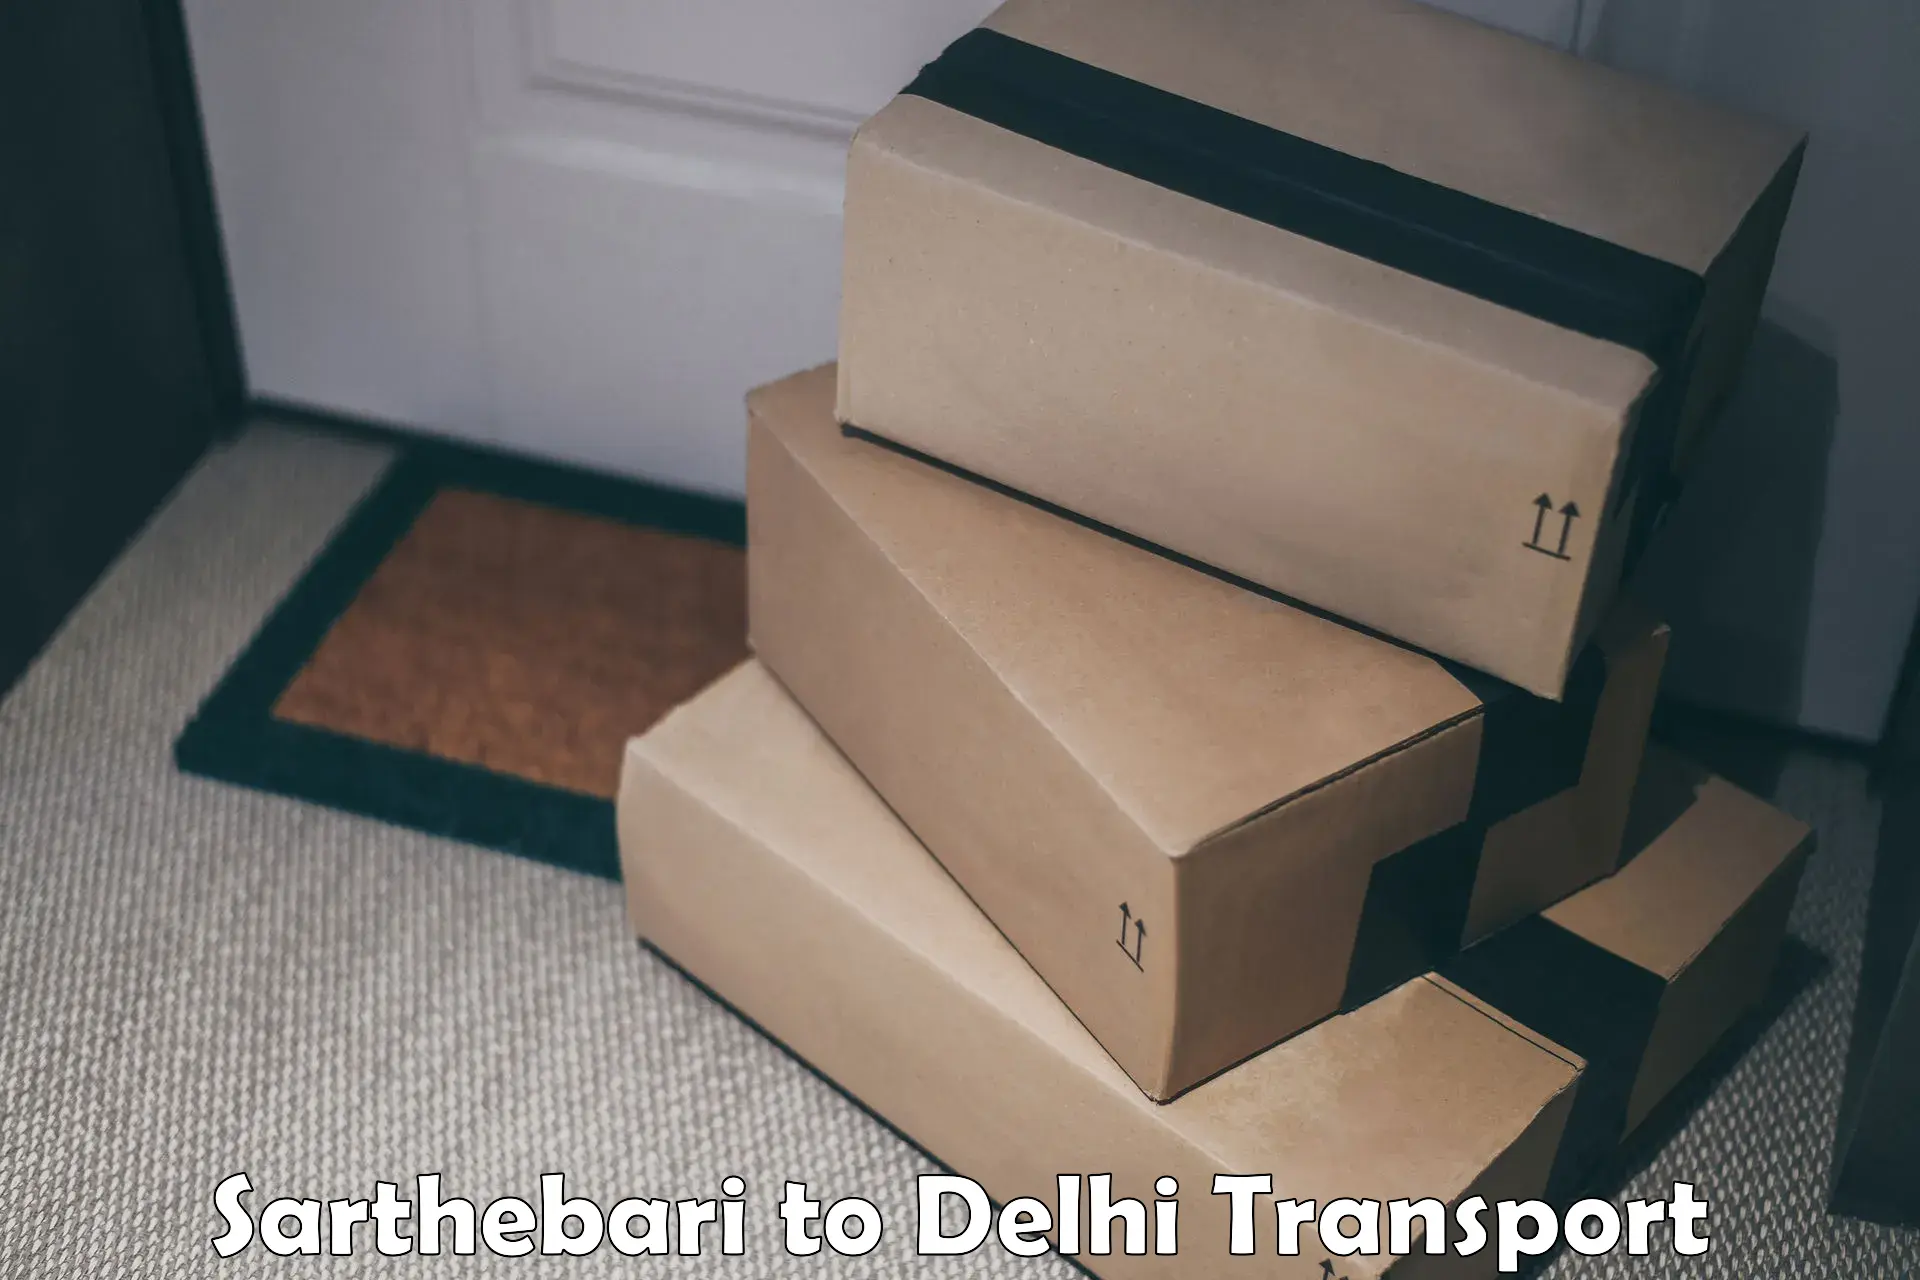 Intercity goods transport in Sarthebari to IIT Delhi